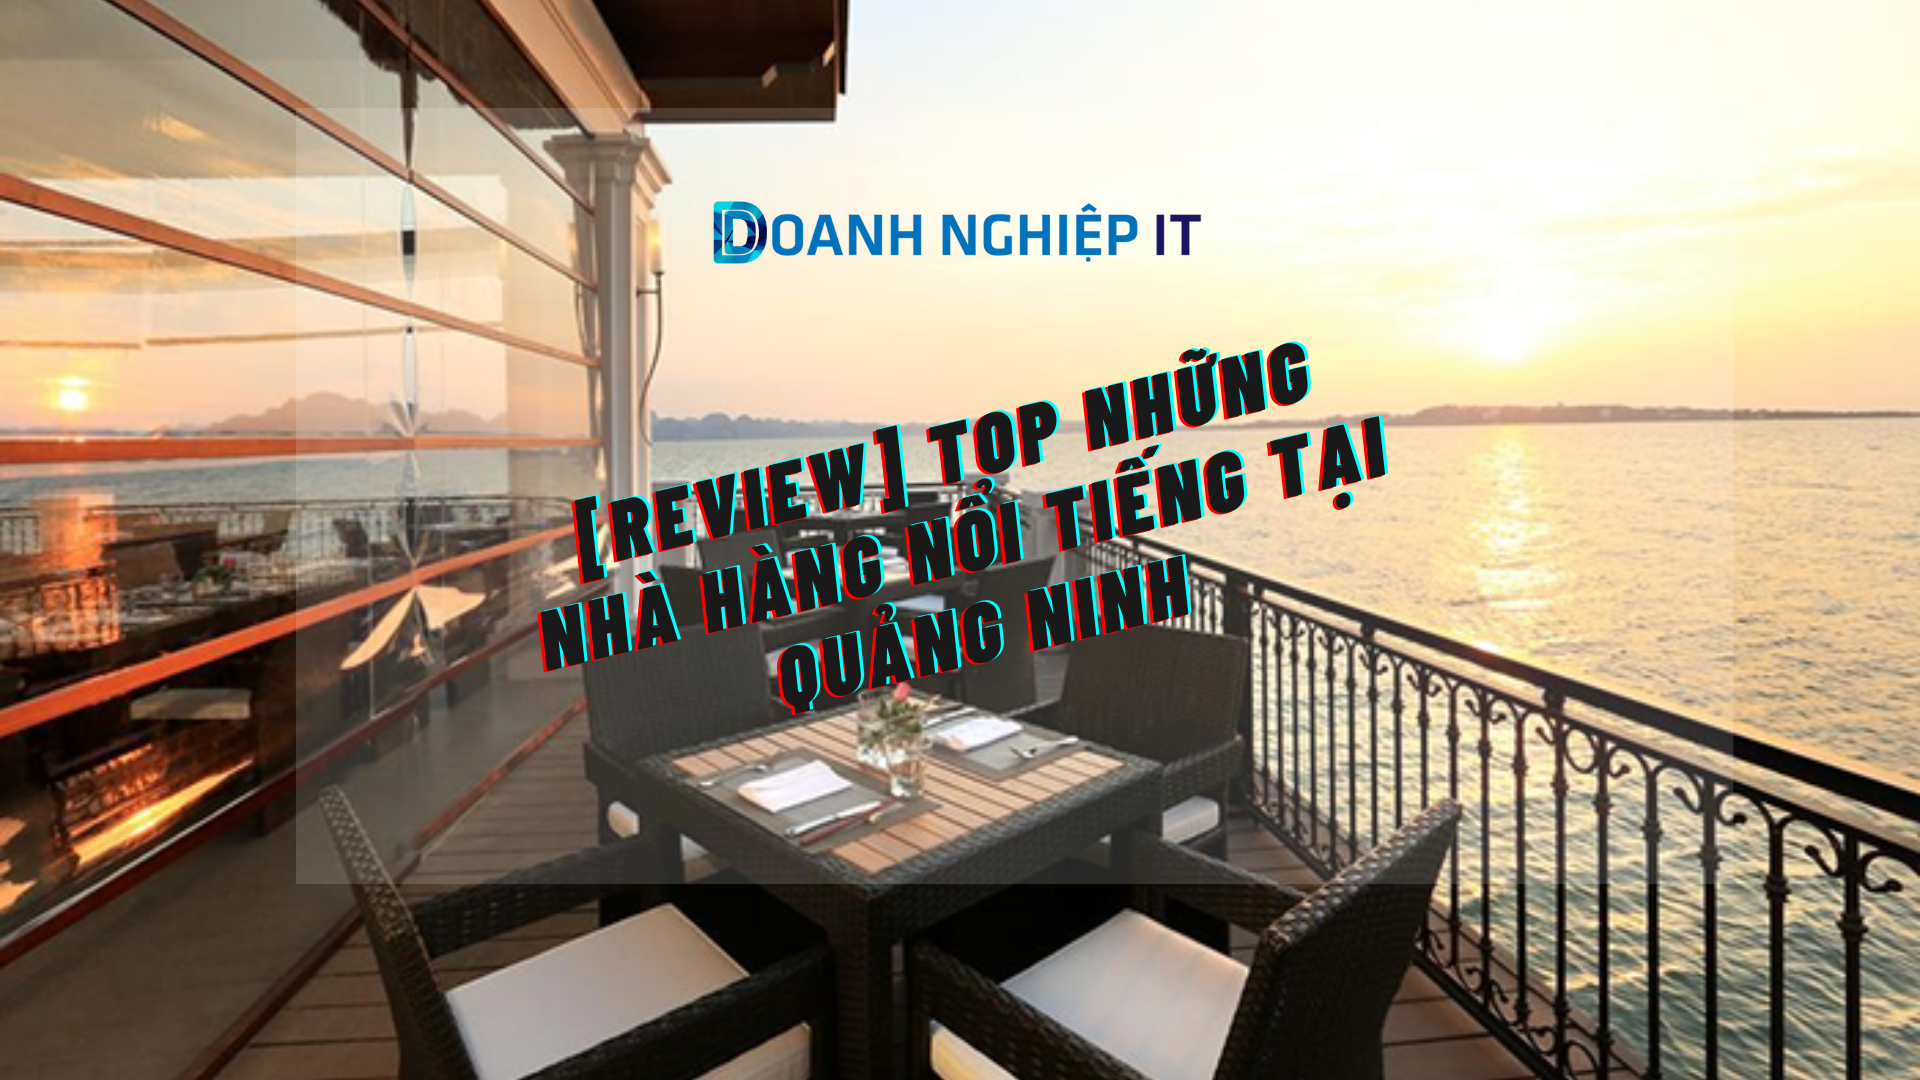 [Review] Top những nhà hàng nổi tiếng tại Quảng Ninh